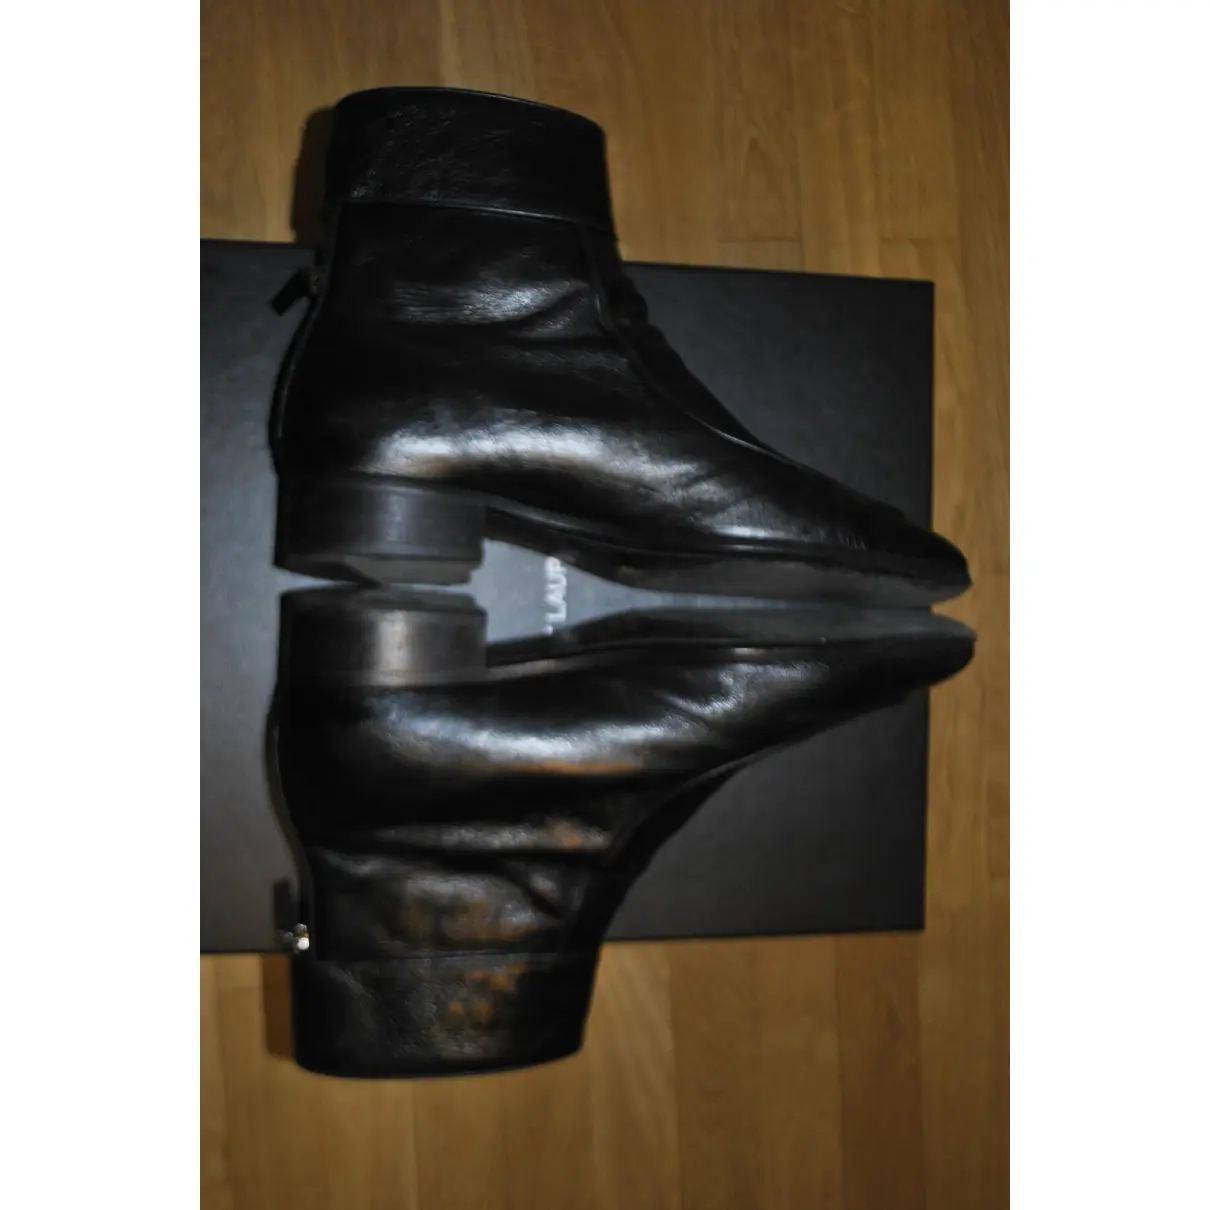 Miles leather boots Saint Laurent